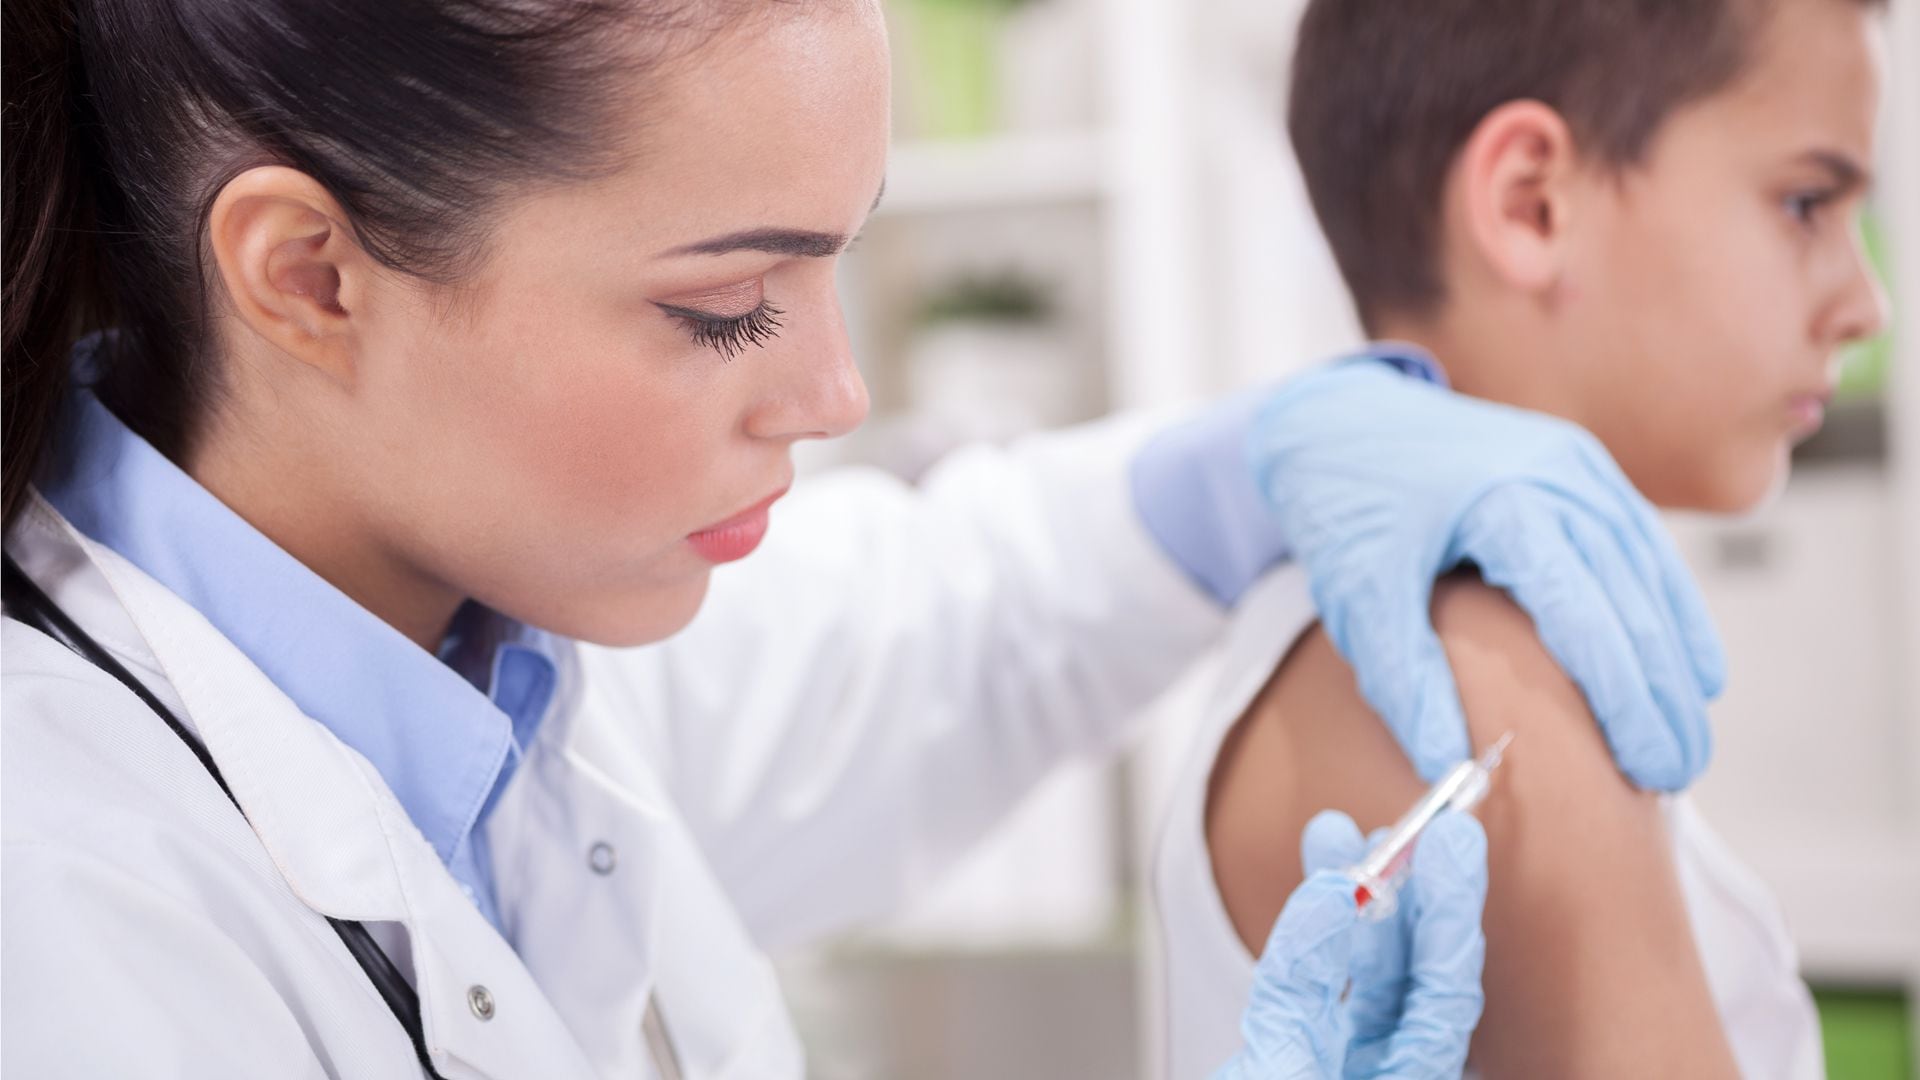 La OMS ha informado que la vacuna sirve para prevenir verrugas y cánceres asociados al virus del papiloma humano
(Getty Images)